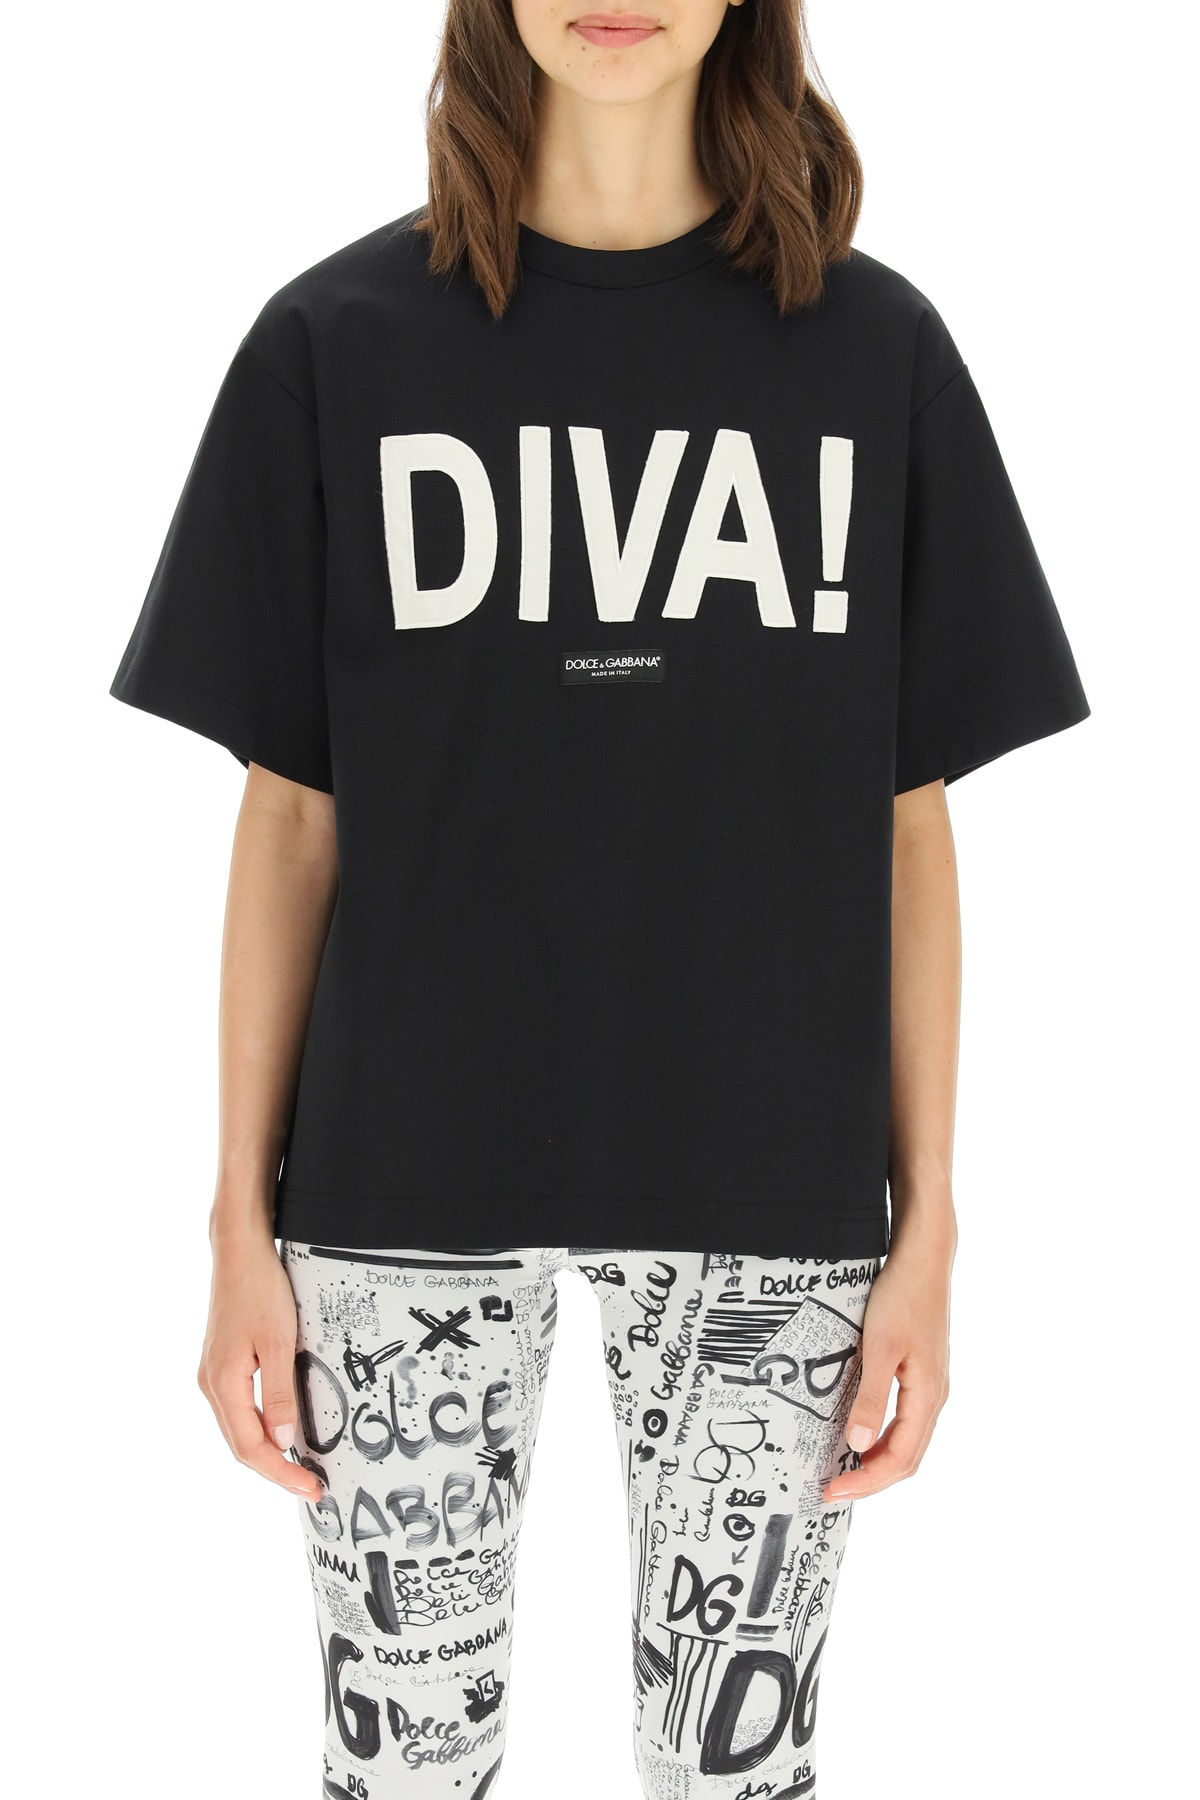 Dolce & Gabbana diva! T-shirt